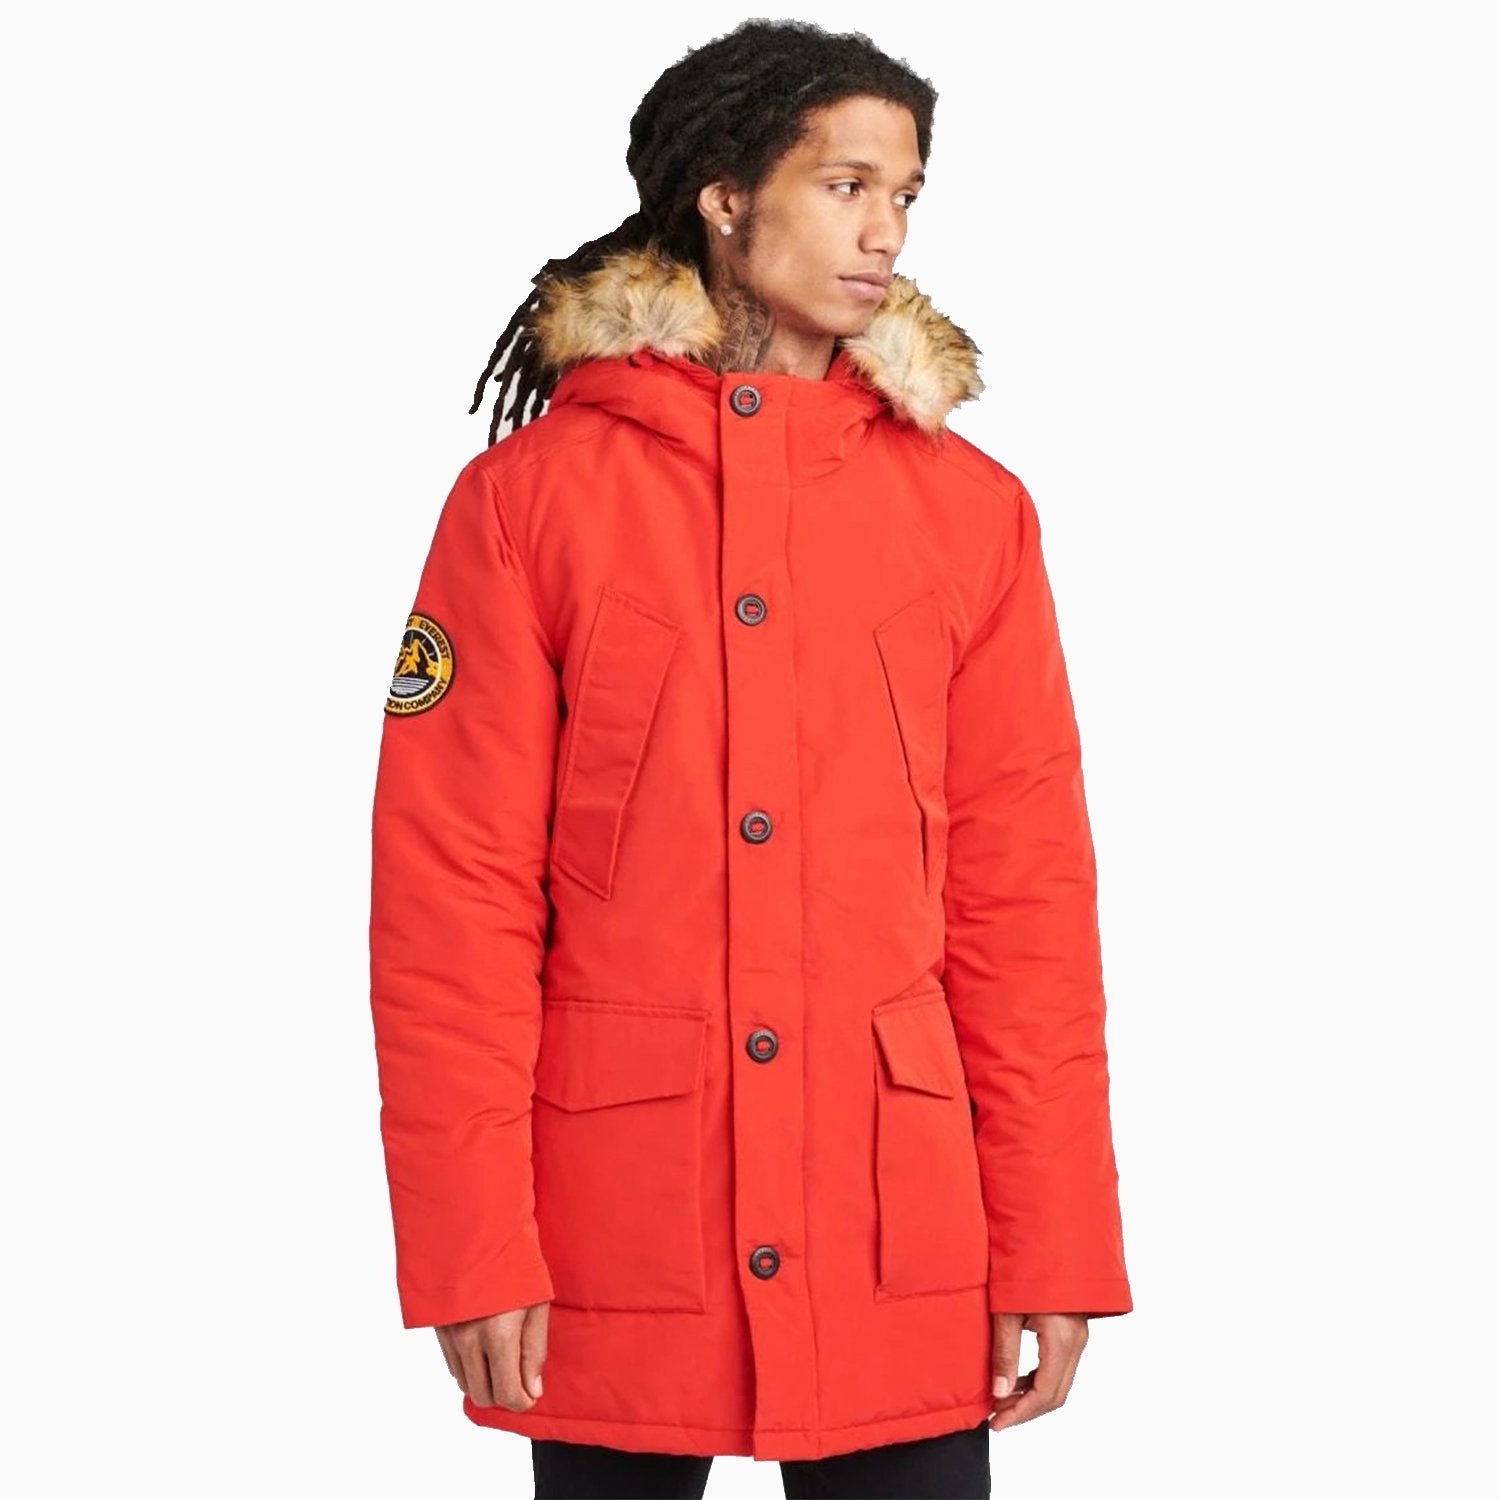 SUPERDRY | Men's Everest Parka Jacket - Color: High Risk Red - Tops and Bottoms USA -